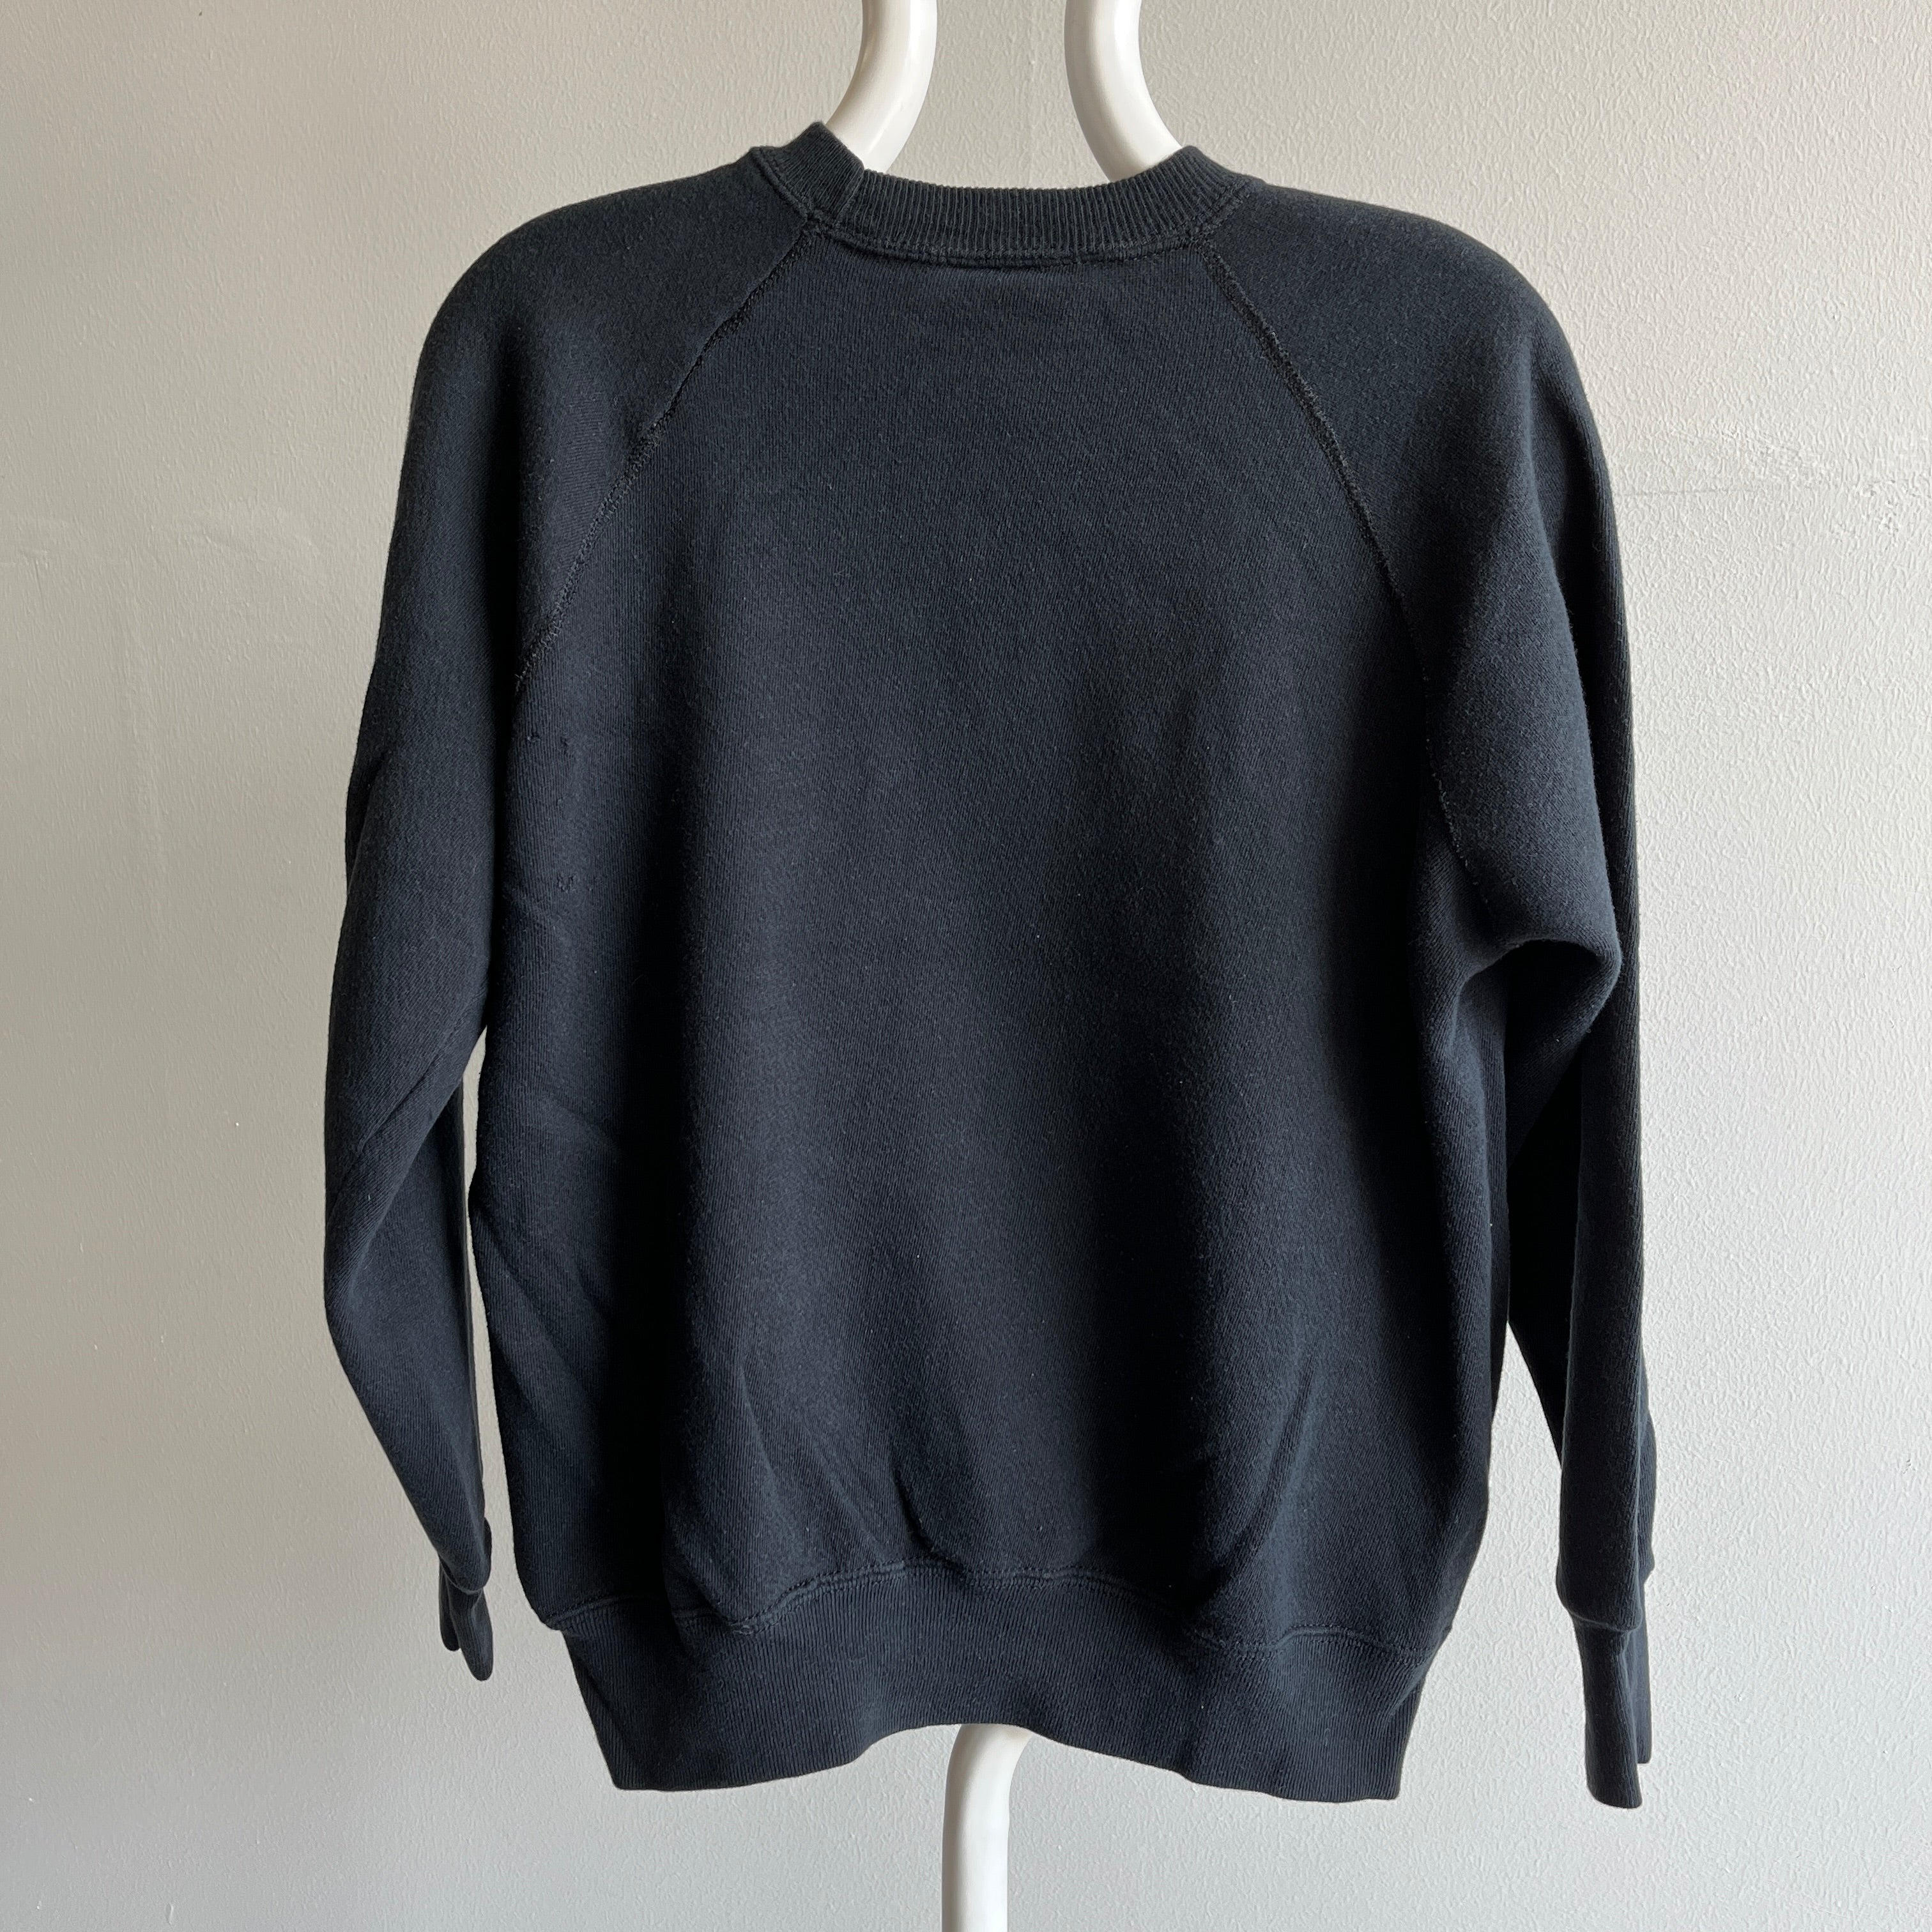 1980s Blank Black Raglan Sweatshirt by Bassett Walker